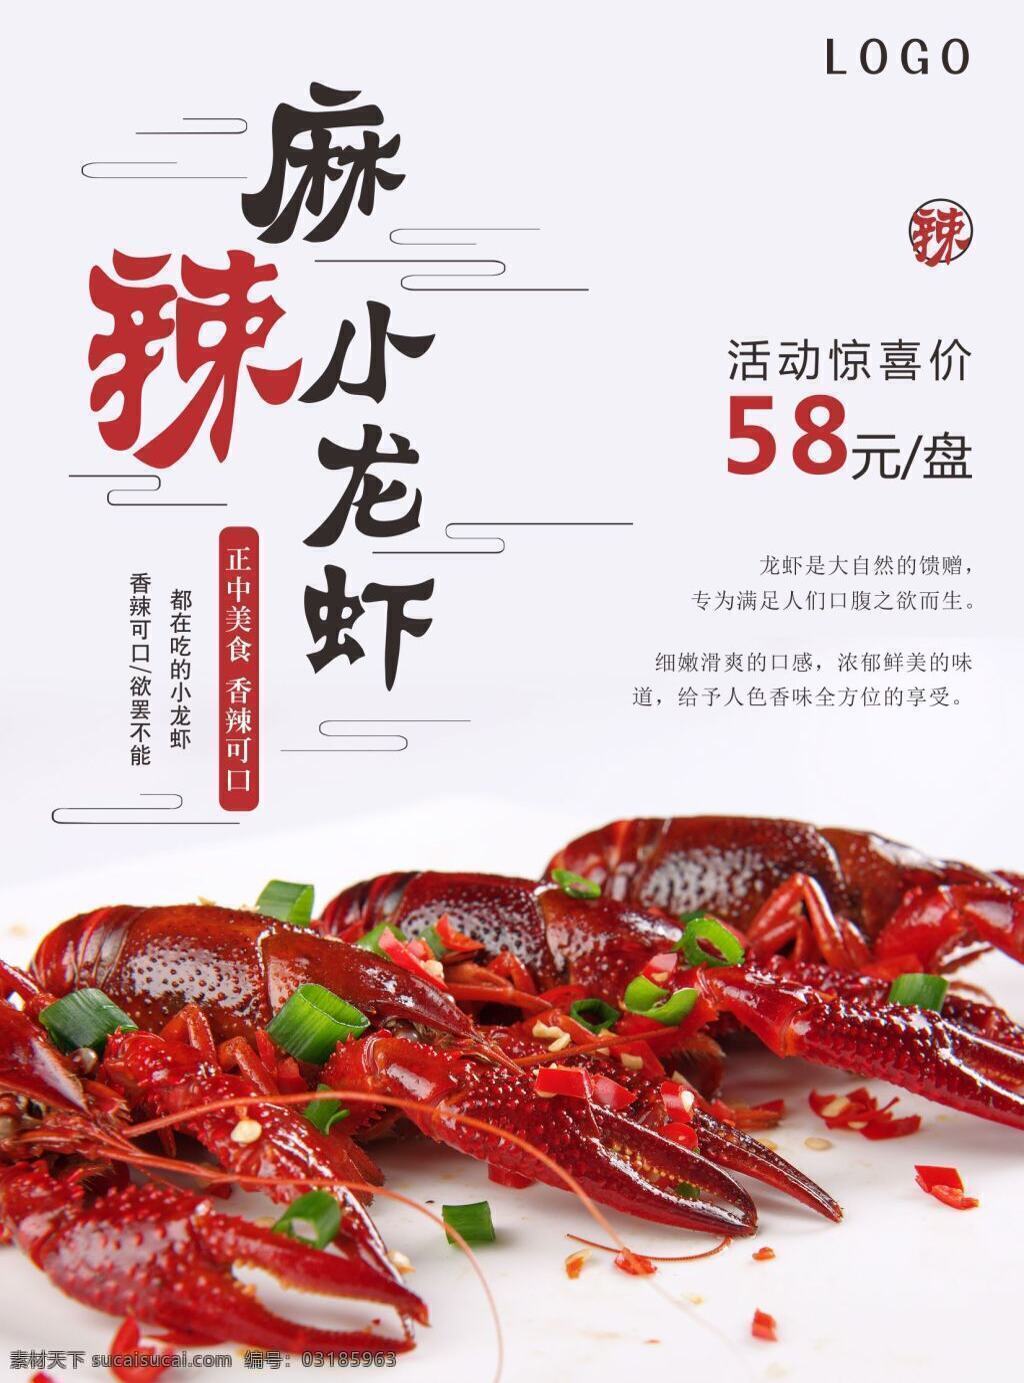 麻辣龙虾海报 麻辣 小龙虾 宣传 促销 海报 美食 餐厅 饭店 展板